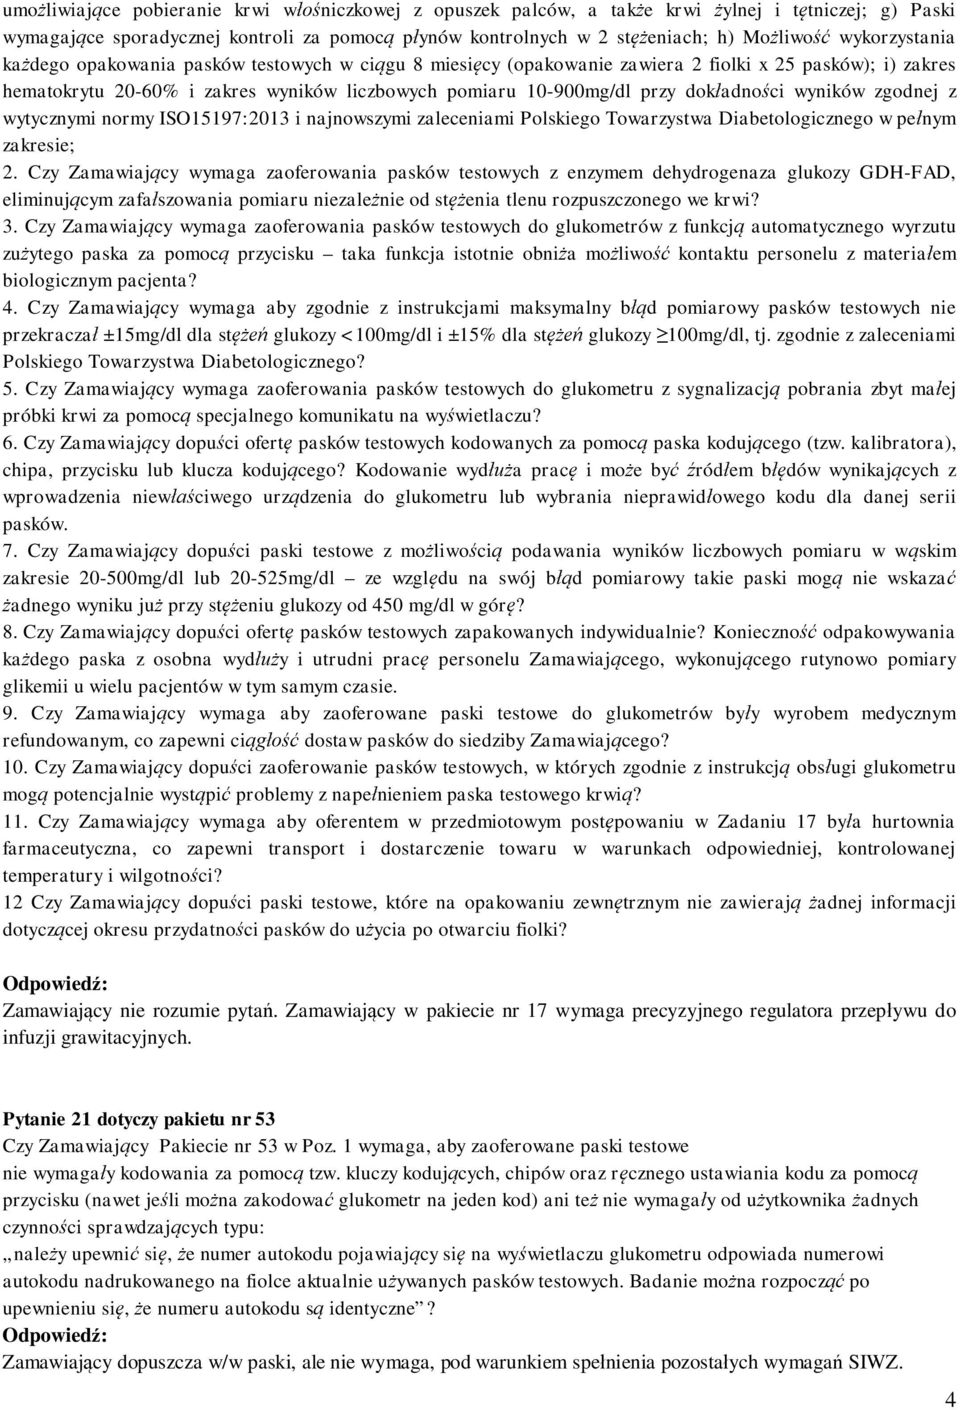 dokładności wyników zgodnej z wytycznymi normy ISO15197:2013 i najnowszymi zaleceniami Polskiego Towarzystwa Diabetologicznego w pełnym zakresie; 2.